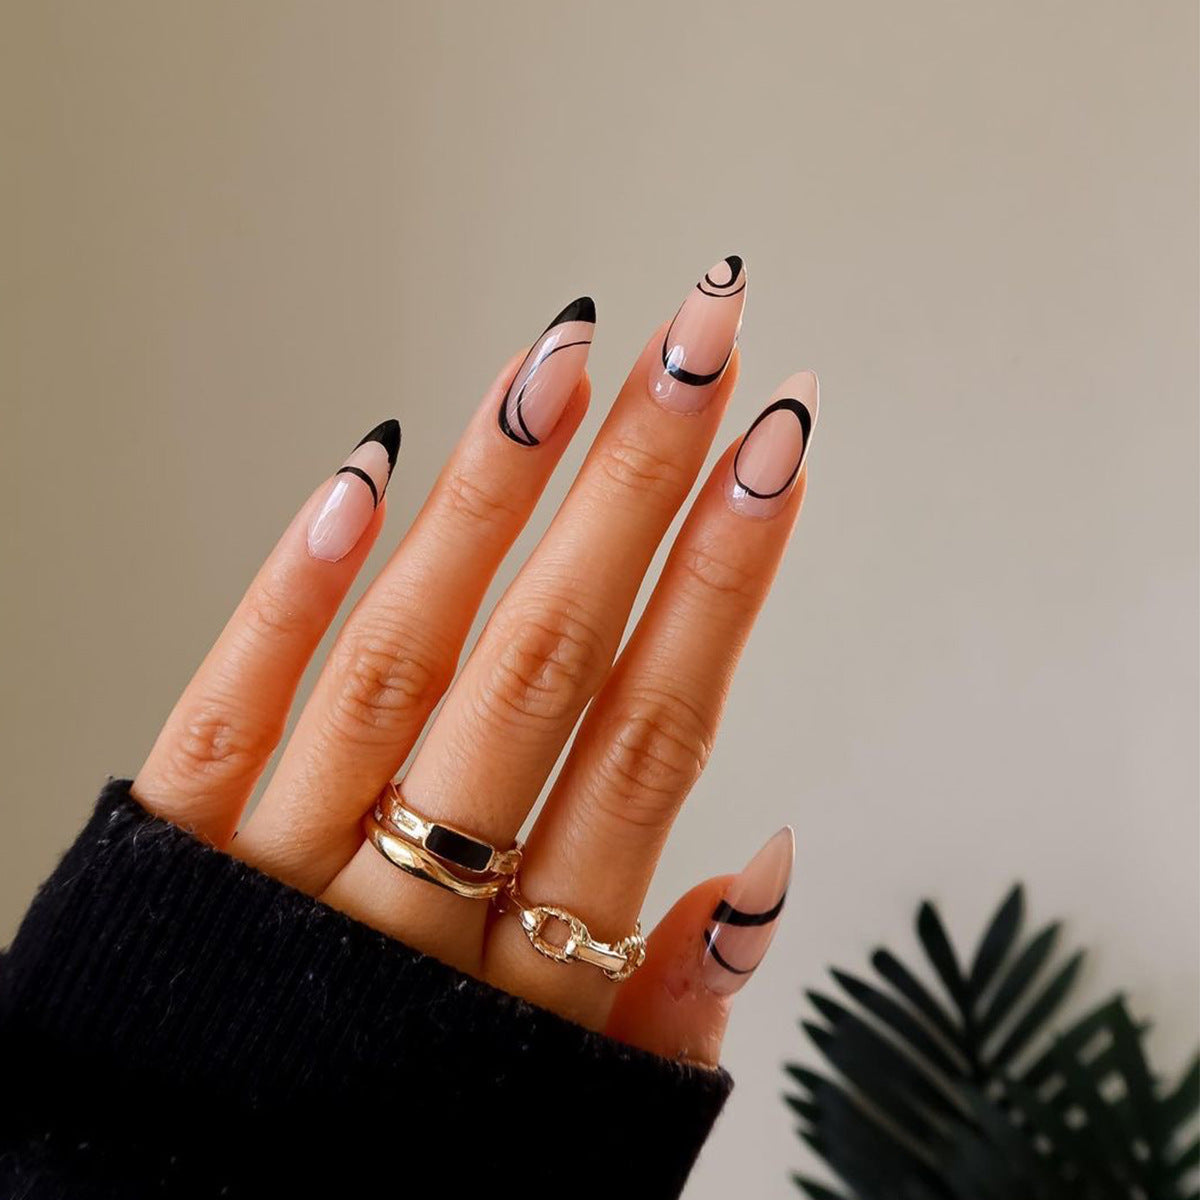 Fingernails - Ingrown fingernails - Dark Line - Fingernail Pain